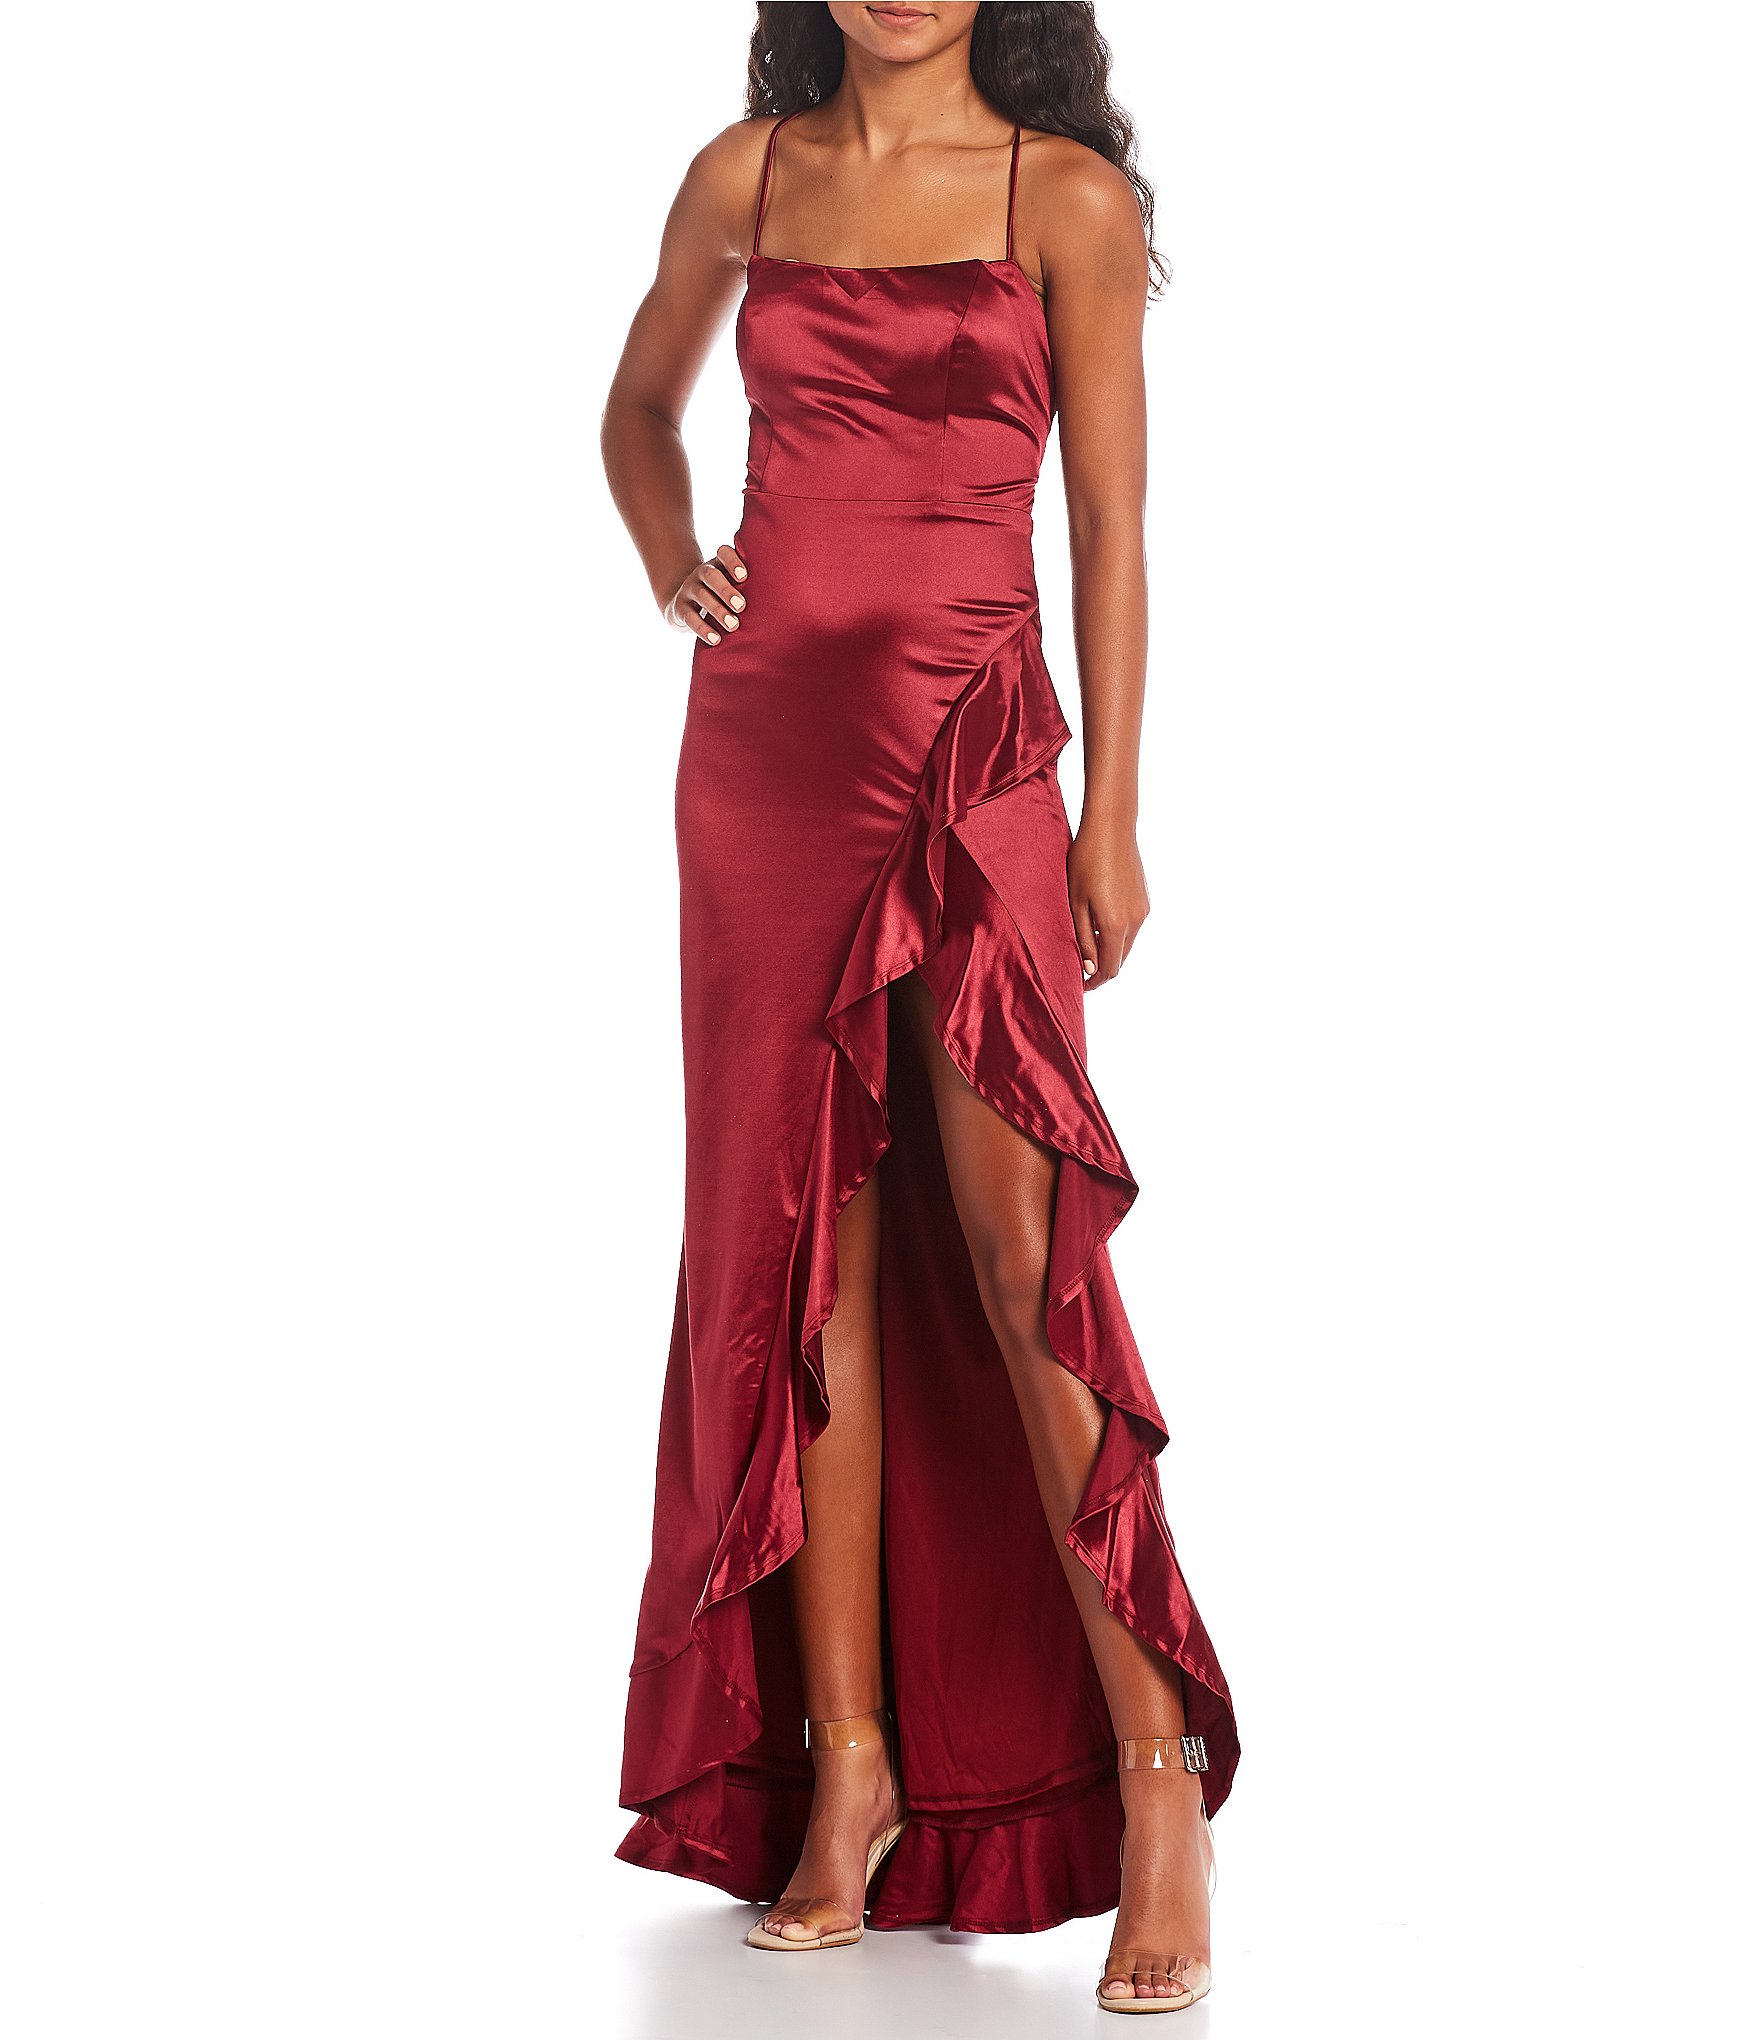 Lilac Satin Jersey Bodycon Dress FINAL SALE – Mesh